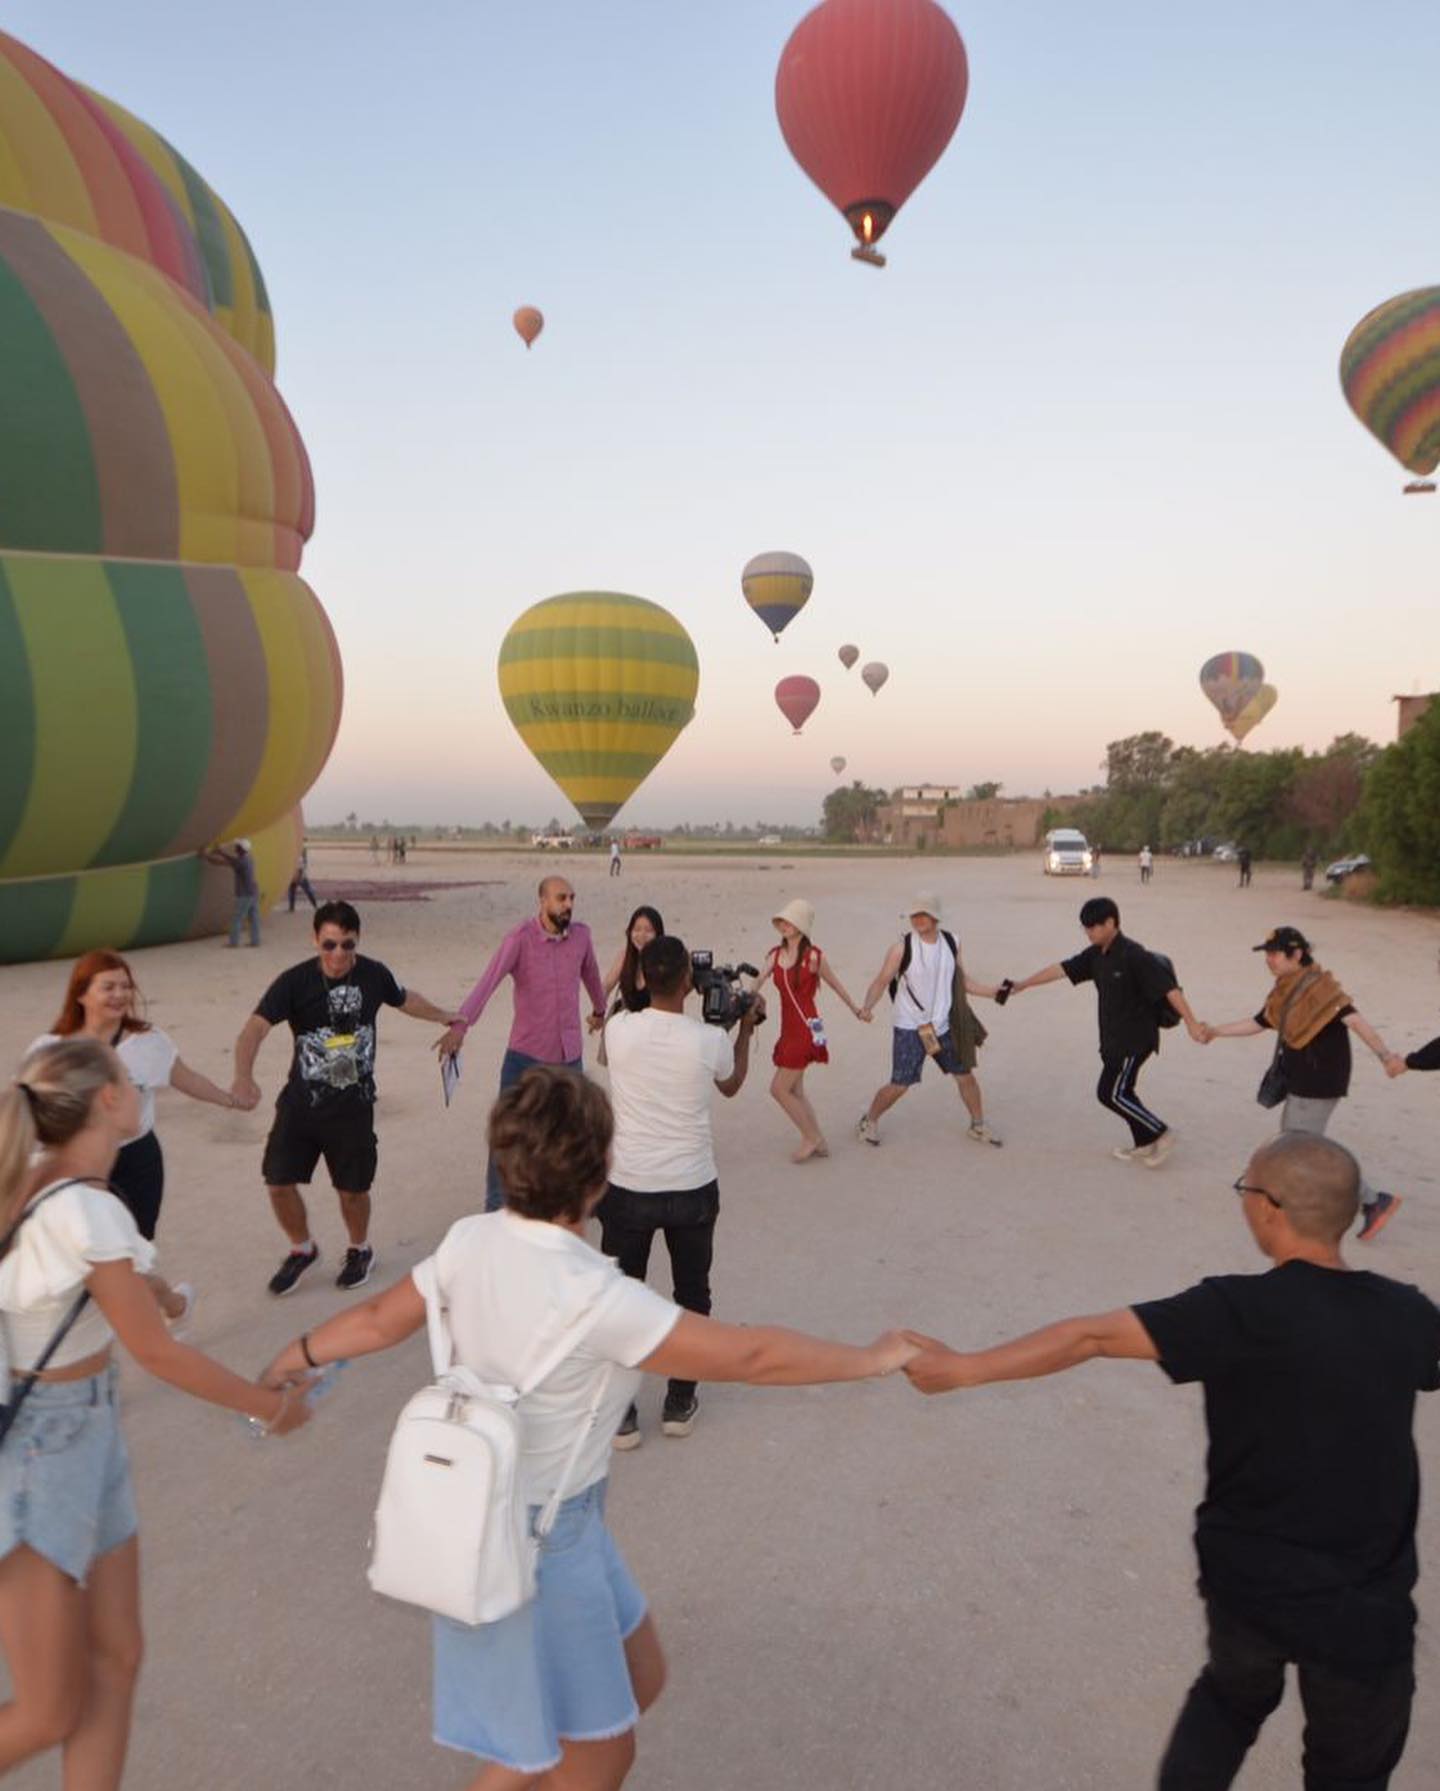 حلقات من البهجة بين السياح فى رحلات البالون